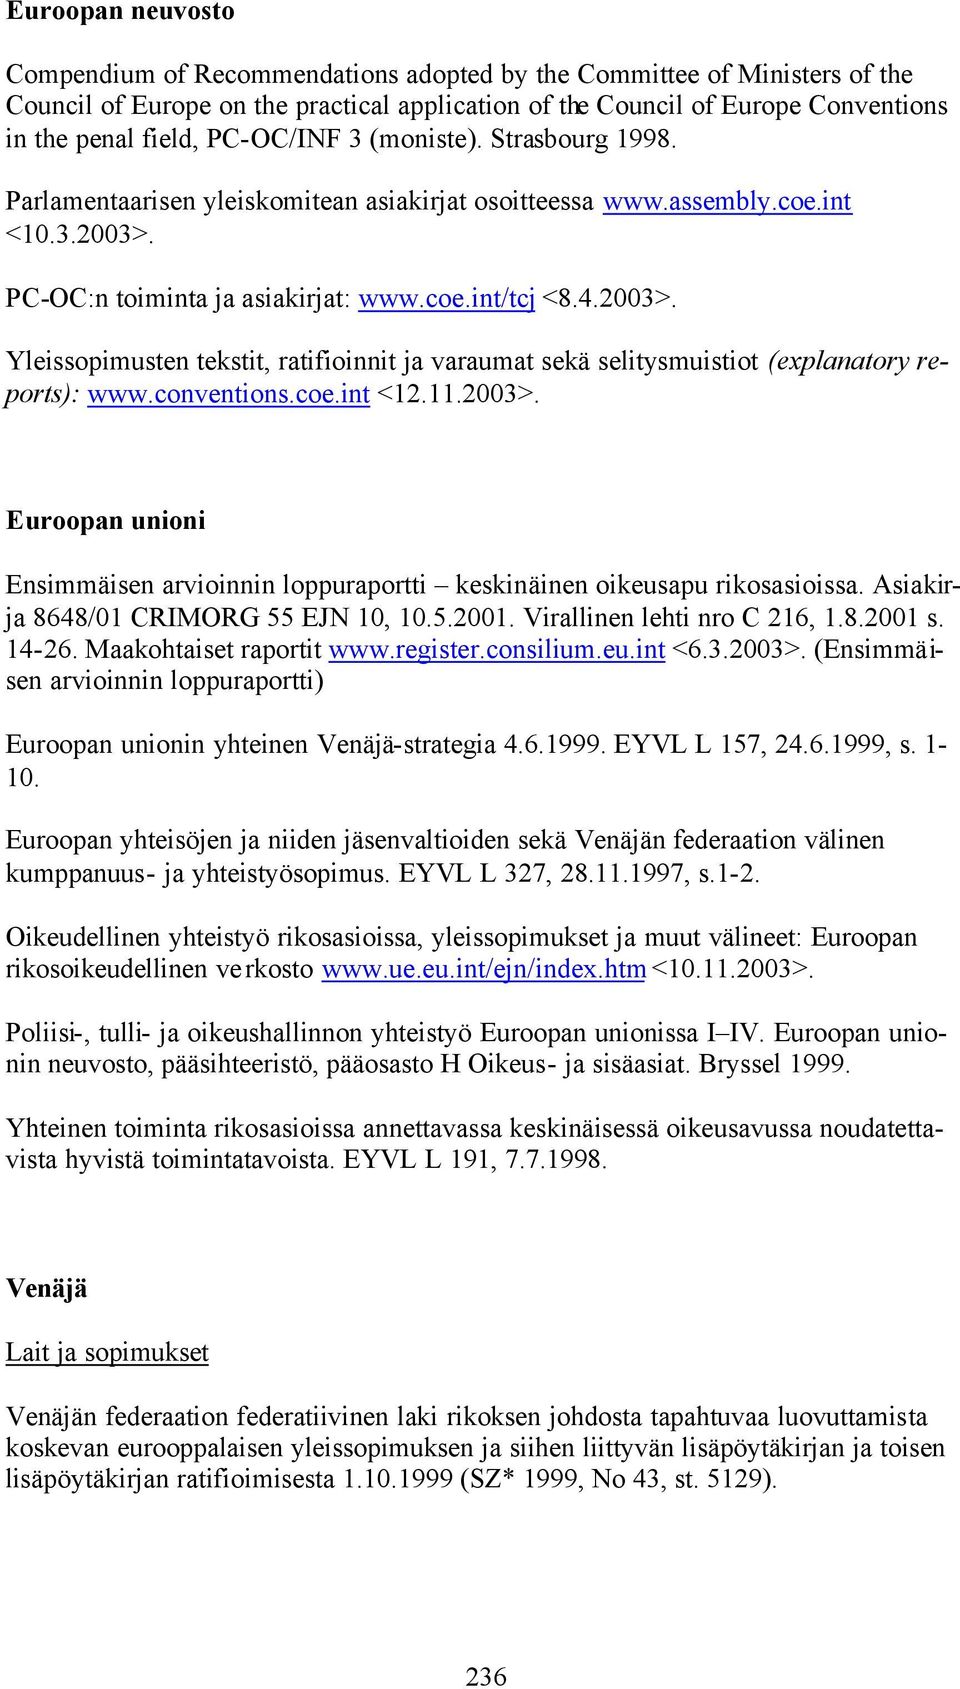 PC-OC:n toiminta ja asiakirjat: www.coe.int/tcj <8.4.2003>. Yleissopimusten tekstit, ratifioinnit ja varaumat sekä selitysmuistiot (explanatory reports): www.conventions.coe.int <12.11.2003>. Euroopan unioni Ensimmäisen arvioinnin loppuraportti keskinäinen oikeusapu rikosasioissa.